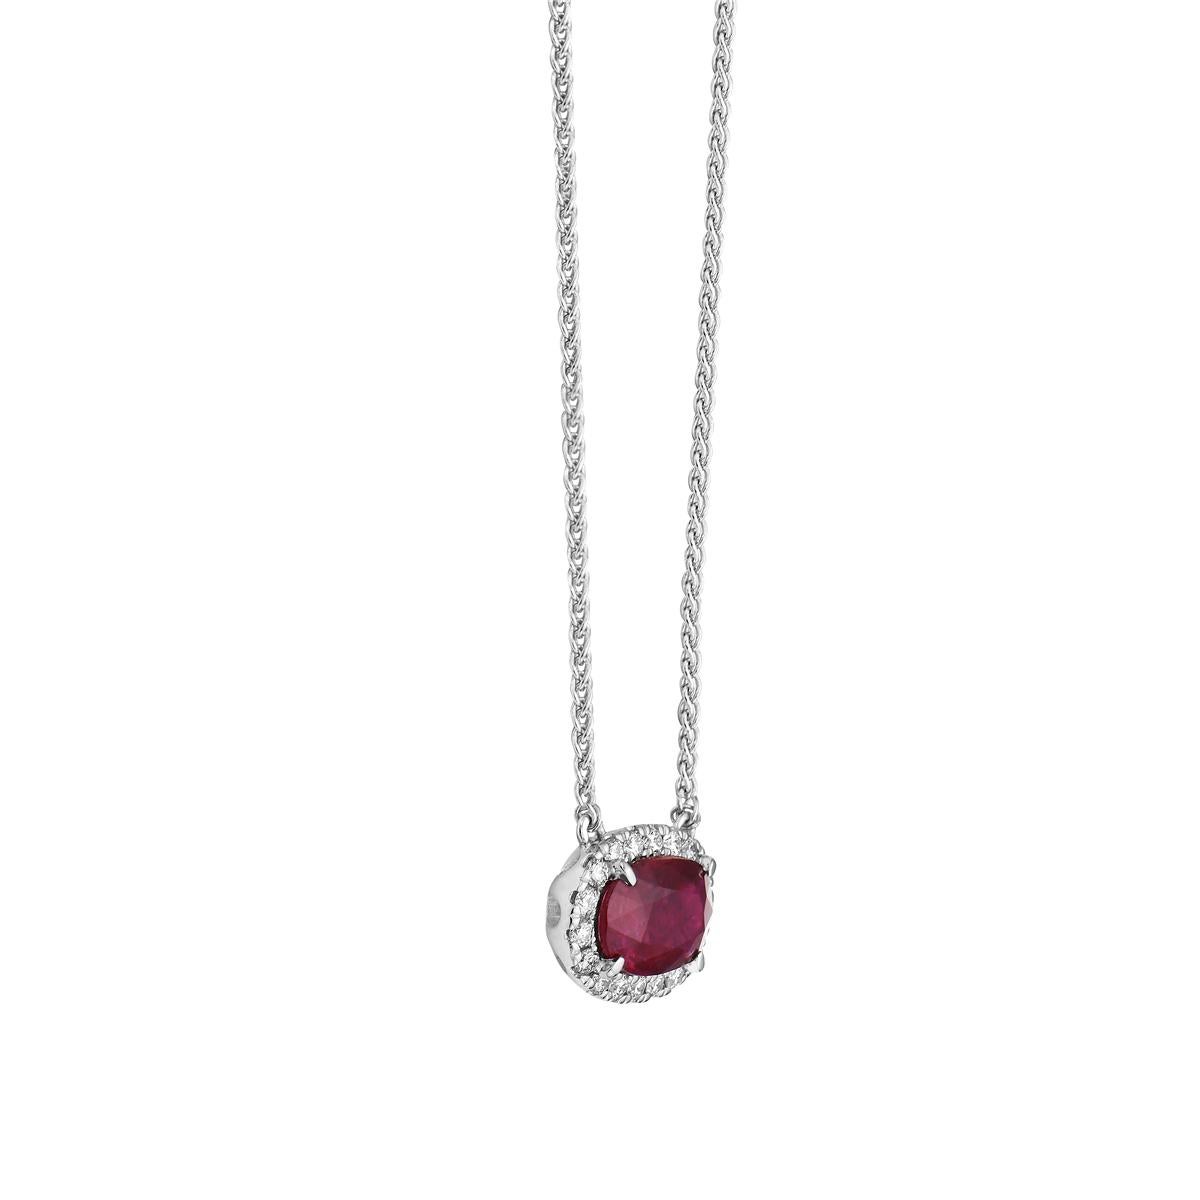 Mit diesem exquisiten ovalen Rubin- und Diamantcollier stehen Stil und Glamour im Mittelpunkt. Diese 18-karätige Halskette mit Rubinen und Diamanten besteht aus 1,1 Gramm Gold. Diese Halskette ist mit Diamanten der Farbe VS2, G geschmückt, die aus